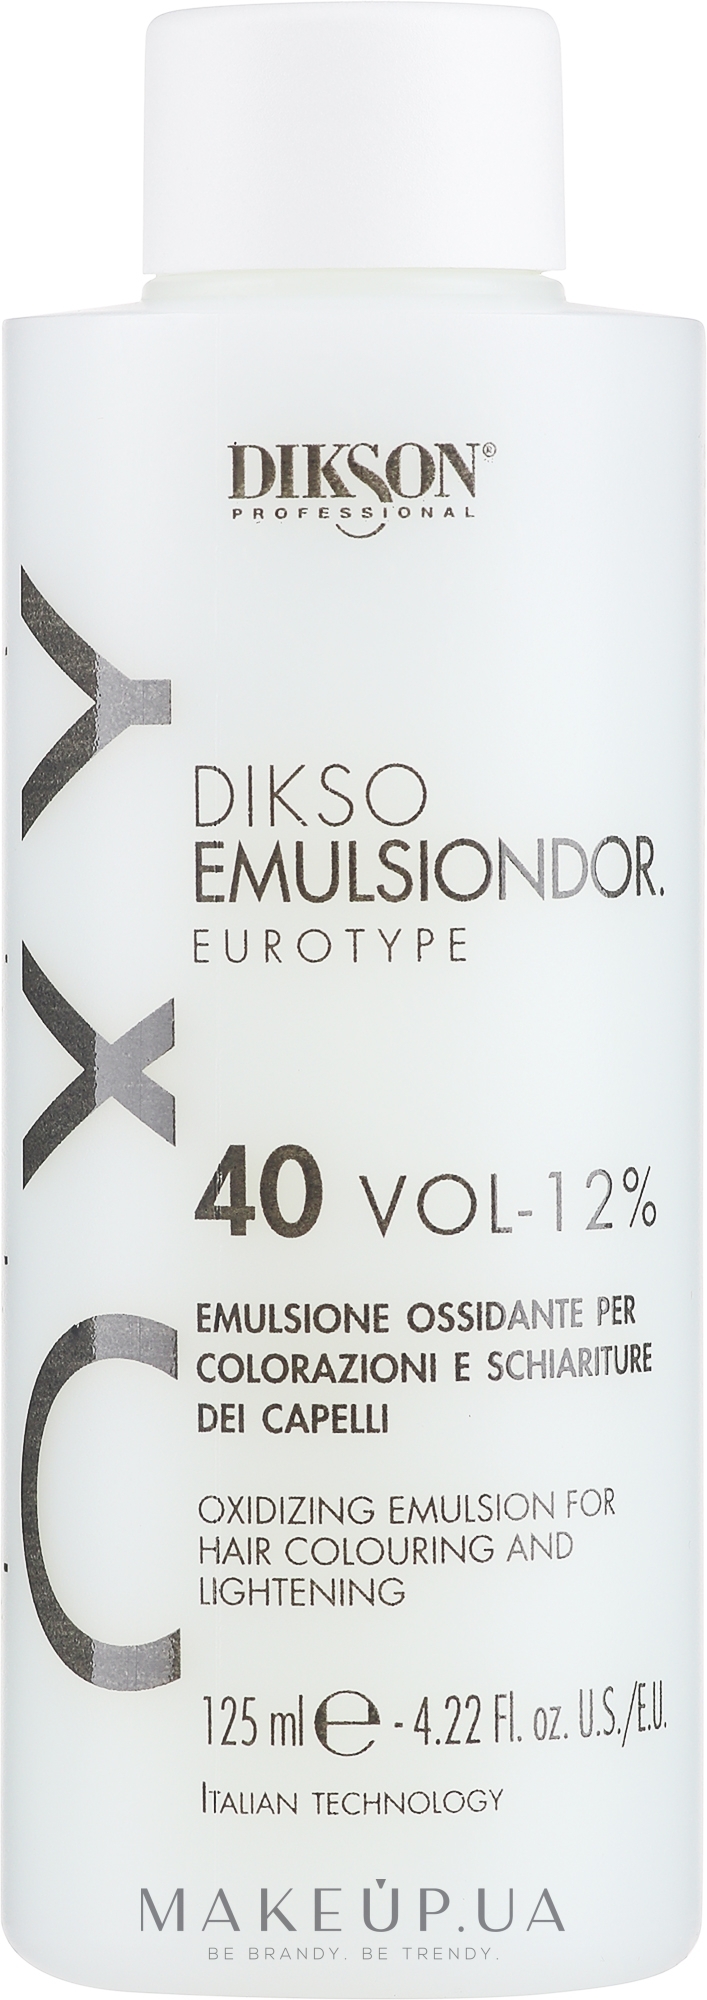 Оксикрем универсальный 12% - Dikson Tec Emulsiondor Eurotype 40 Volumi  — фото 125ml